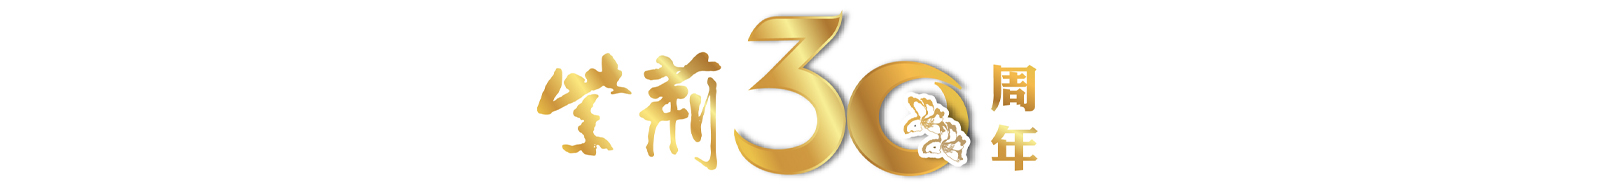 30周年logo2.jpg